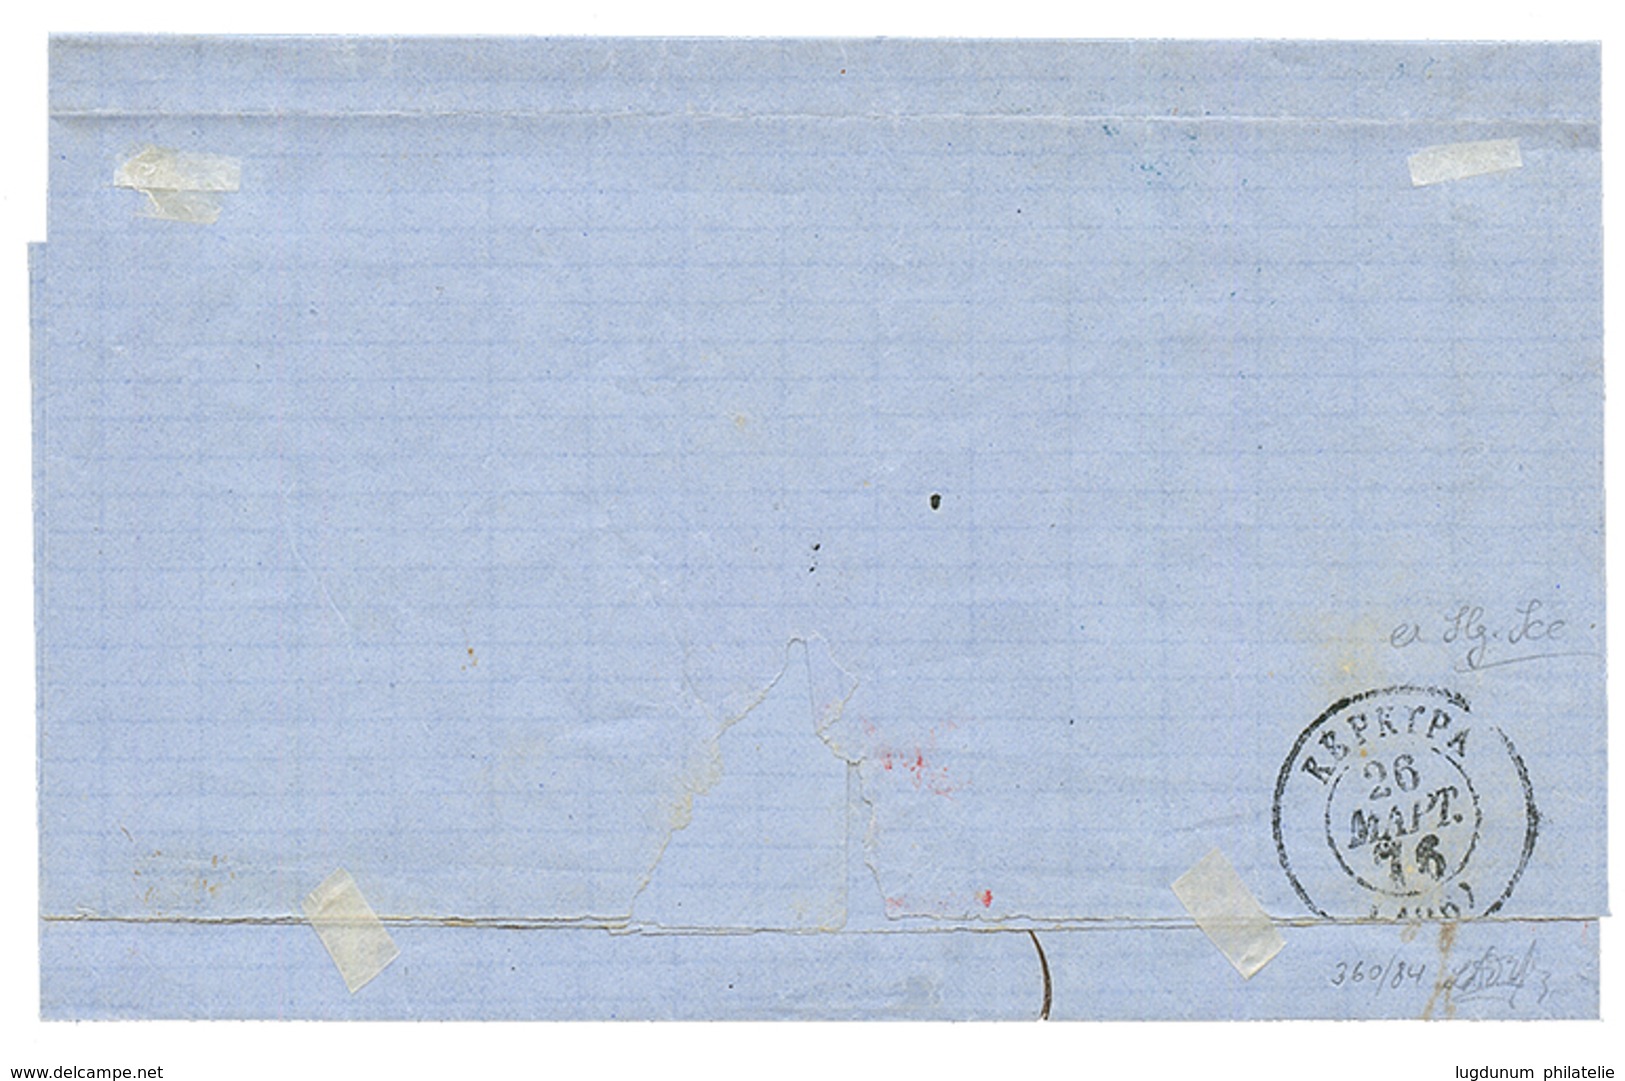 DURAZZO : 1876 10 Soldi Canc. DURAZZO In Blue On Cover To CORFU. RARE. Vvf. - Eastern Austria